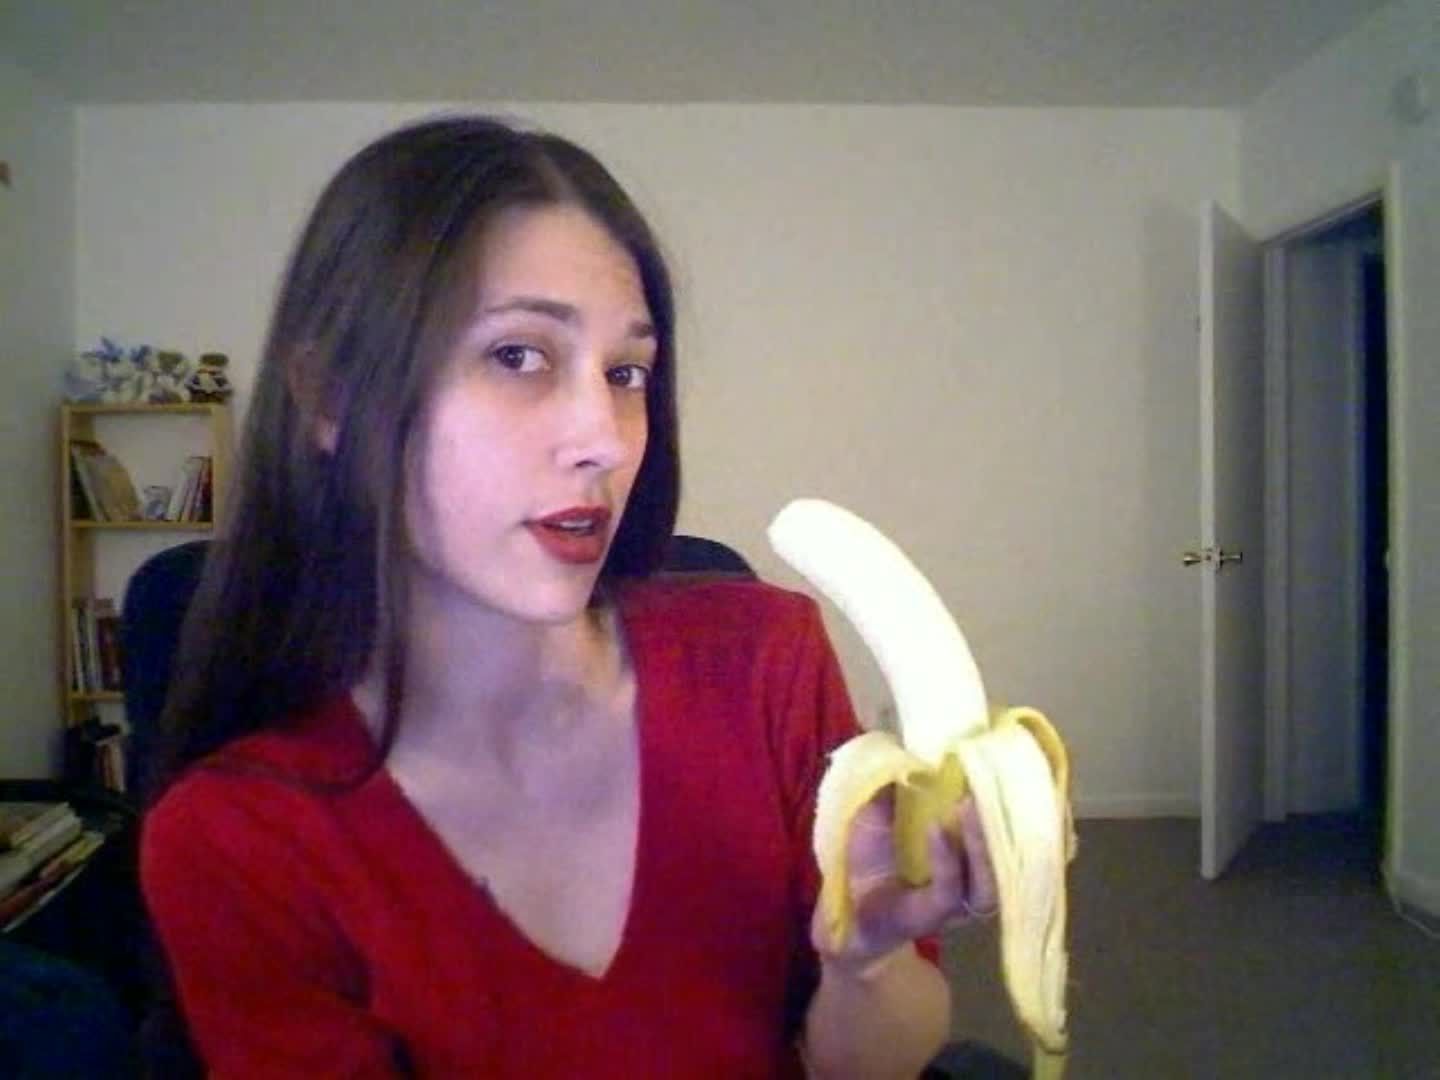 banana bj / fruit blow job fun